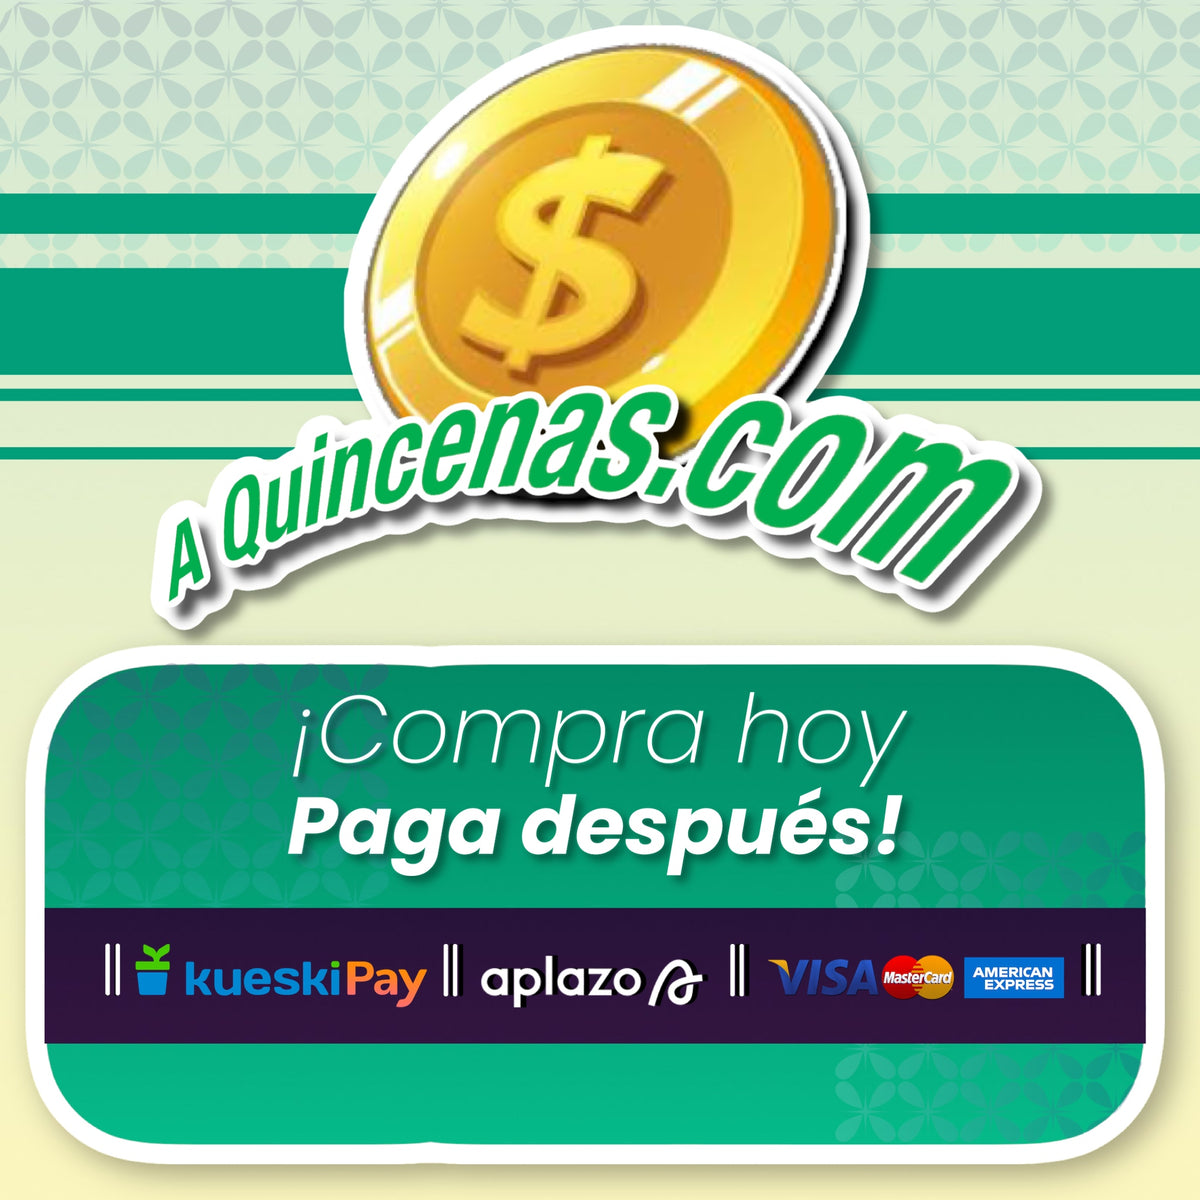 A Quincenas.com